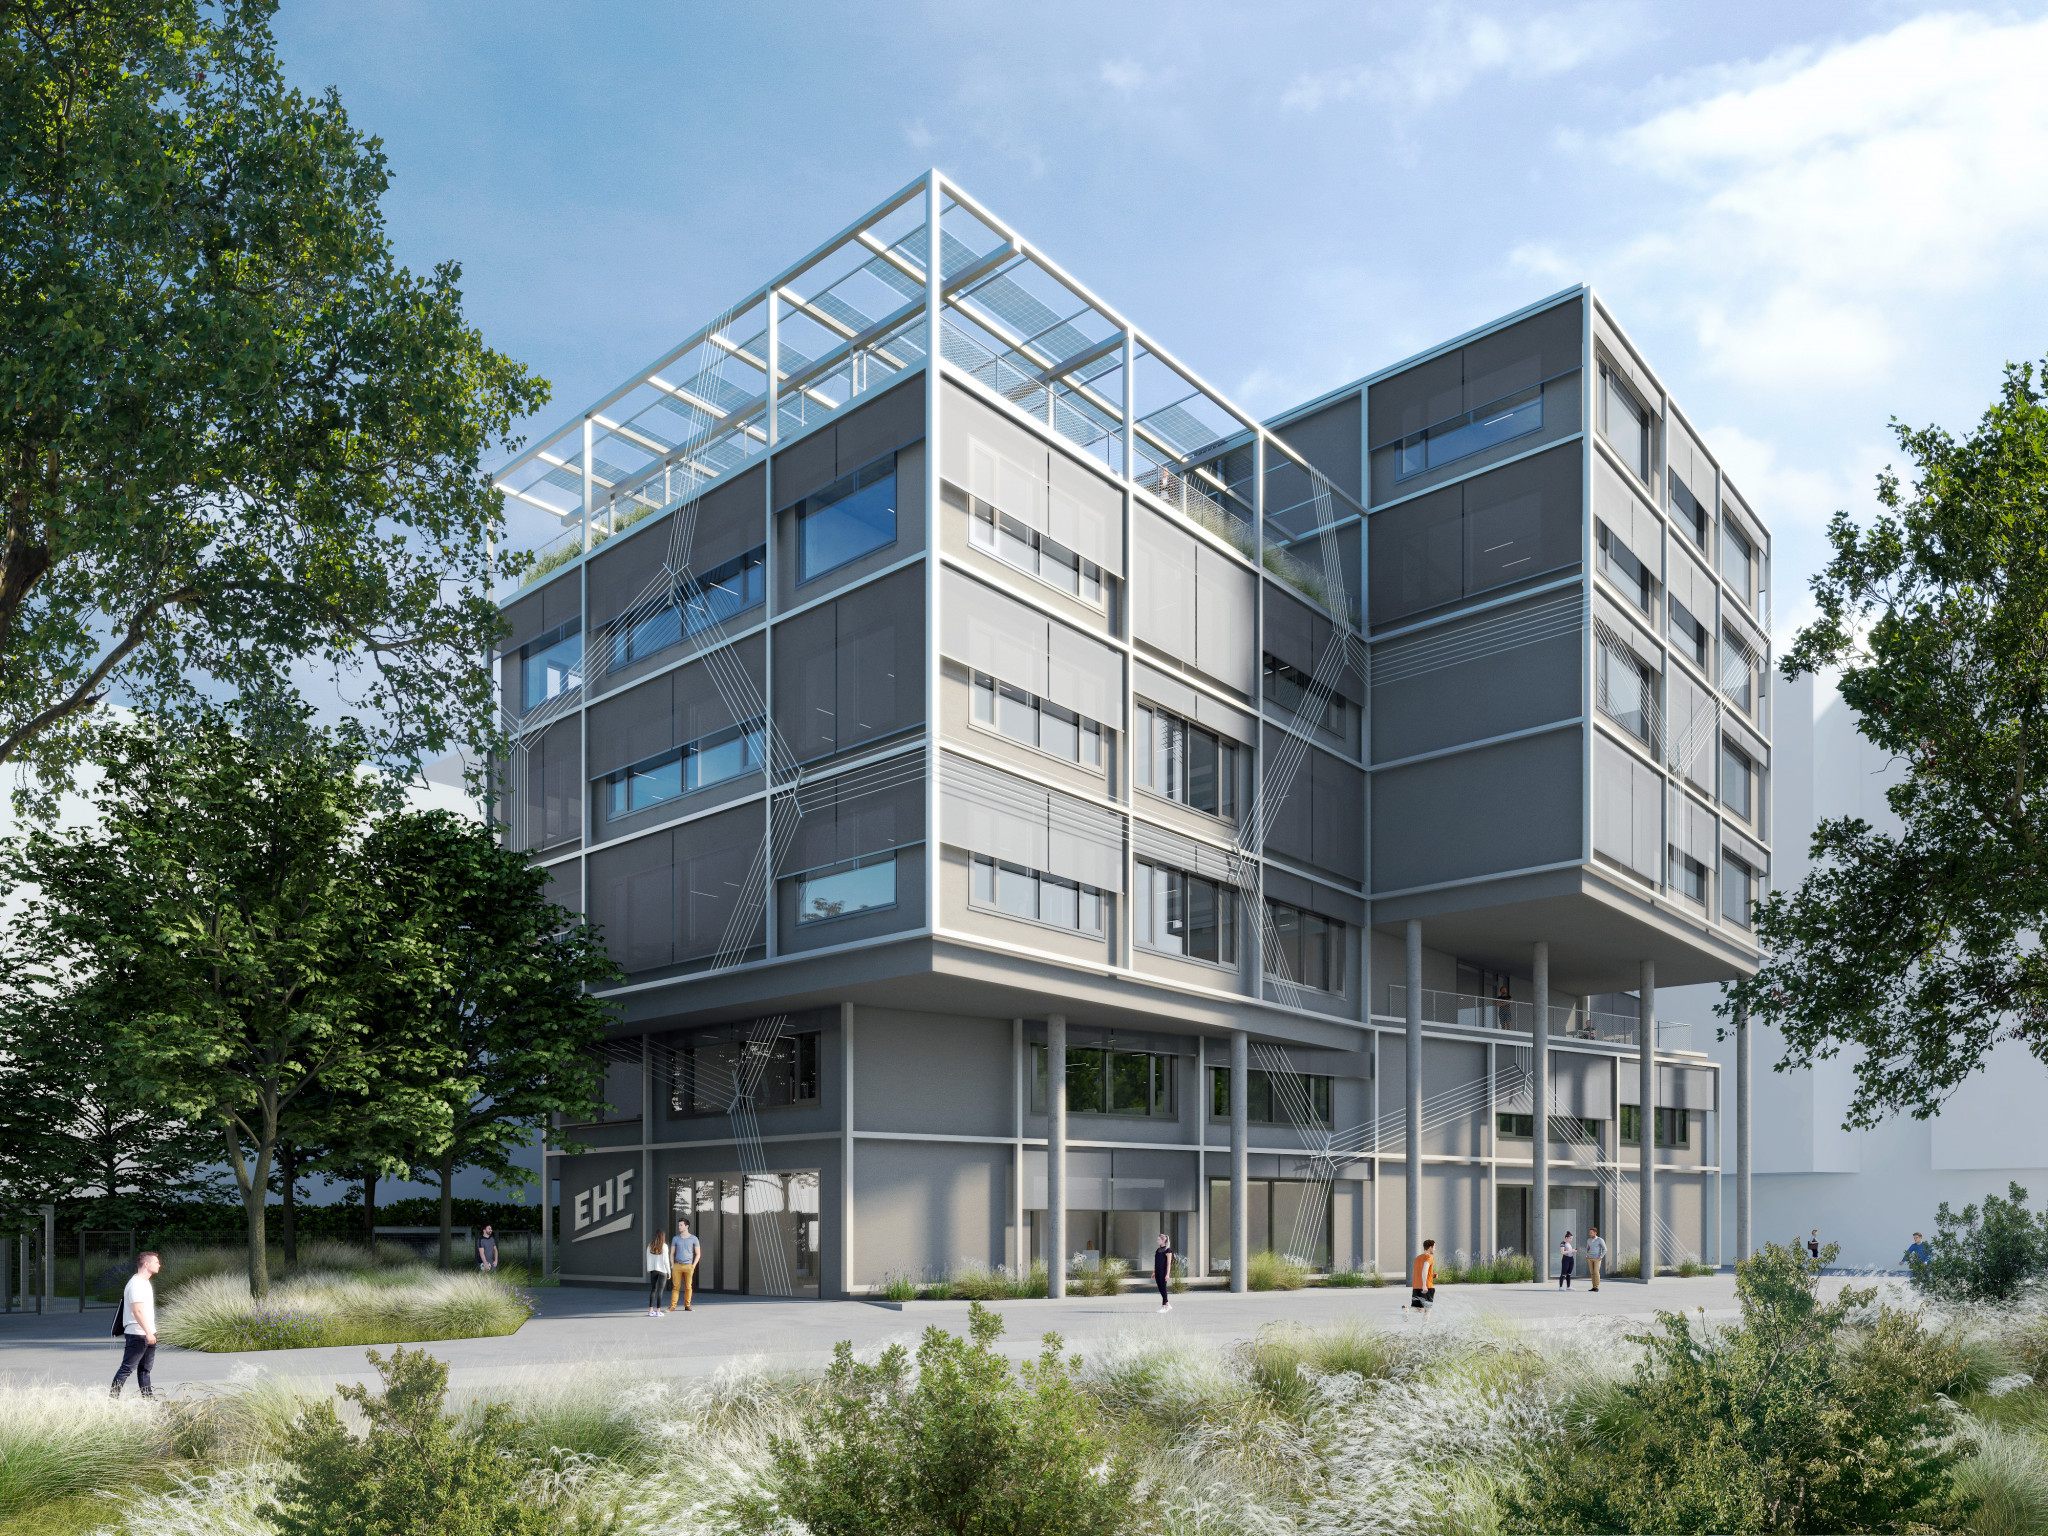 The EHF is set to construct a new headquarters in Vienna ©Burtscher-Durig ZT GmbH